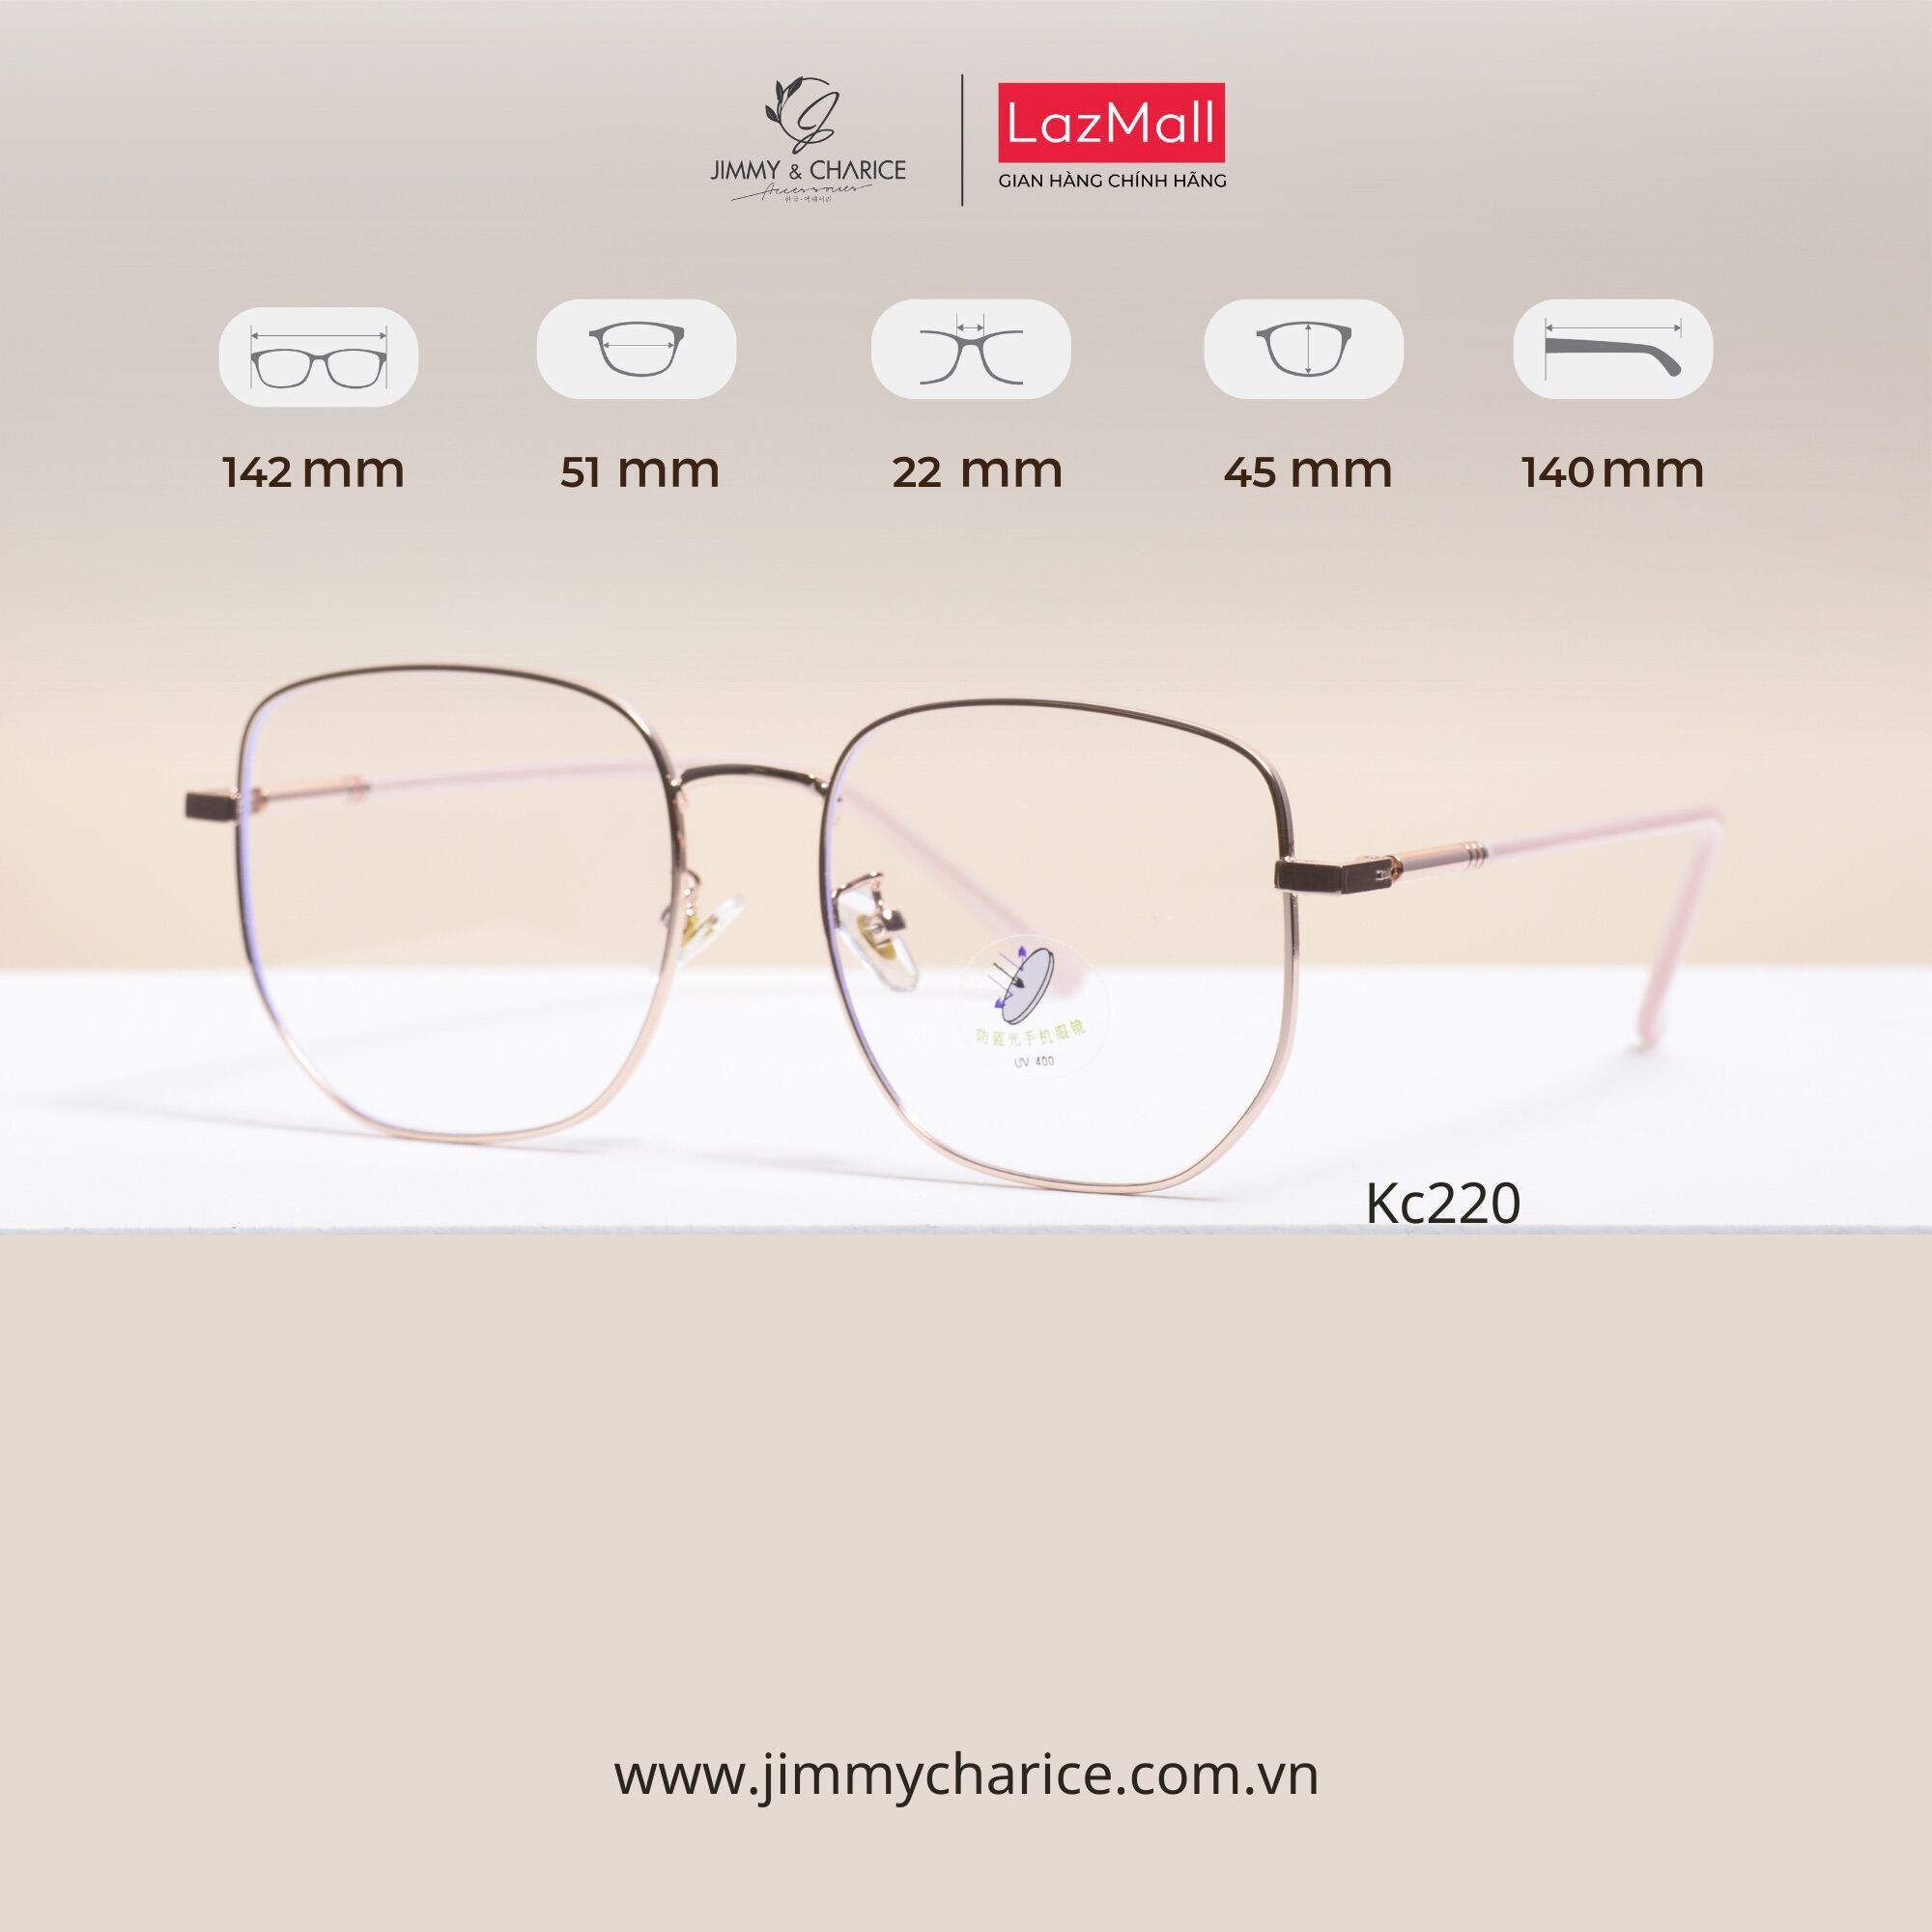 Gọng cận nữ Jimmy & Charice đa giác mắt kính bluecut chống ánh sáng xanh cao cấp thumbnail